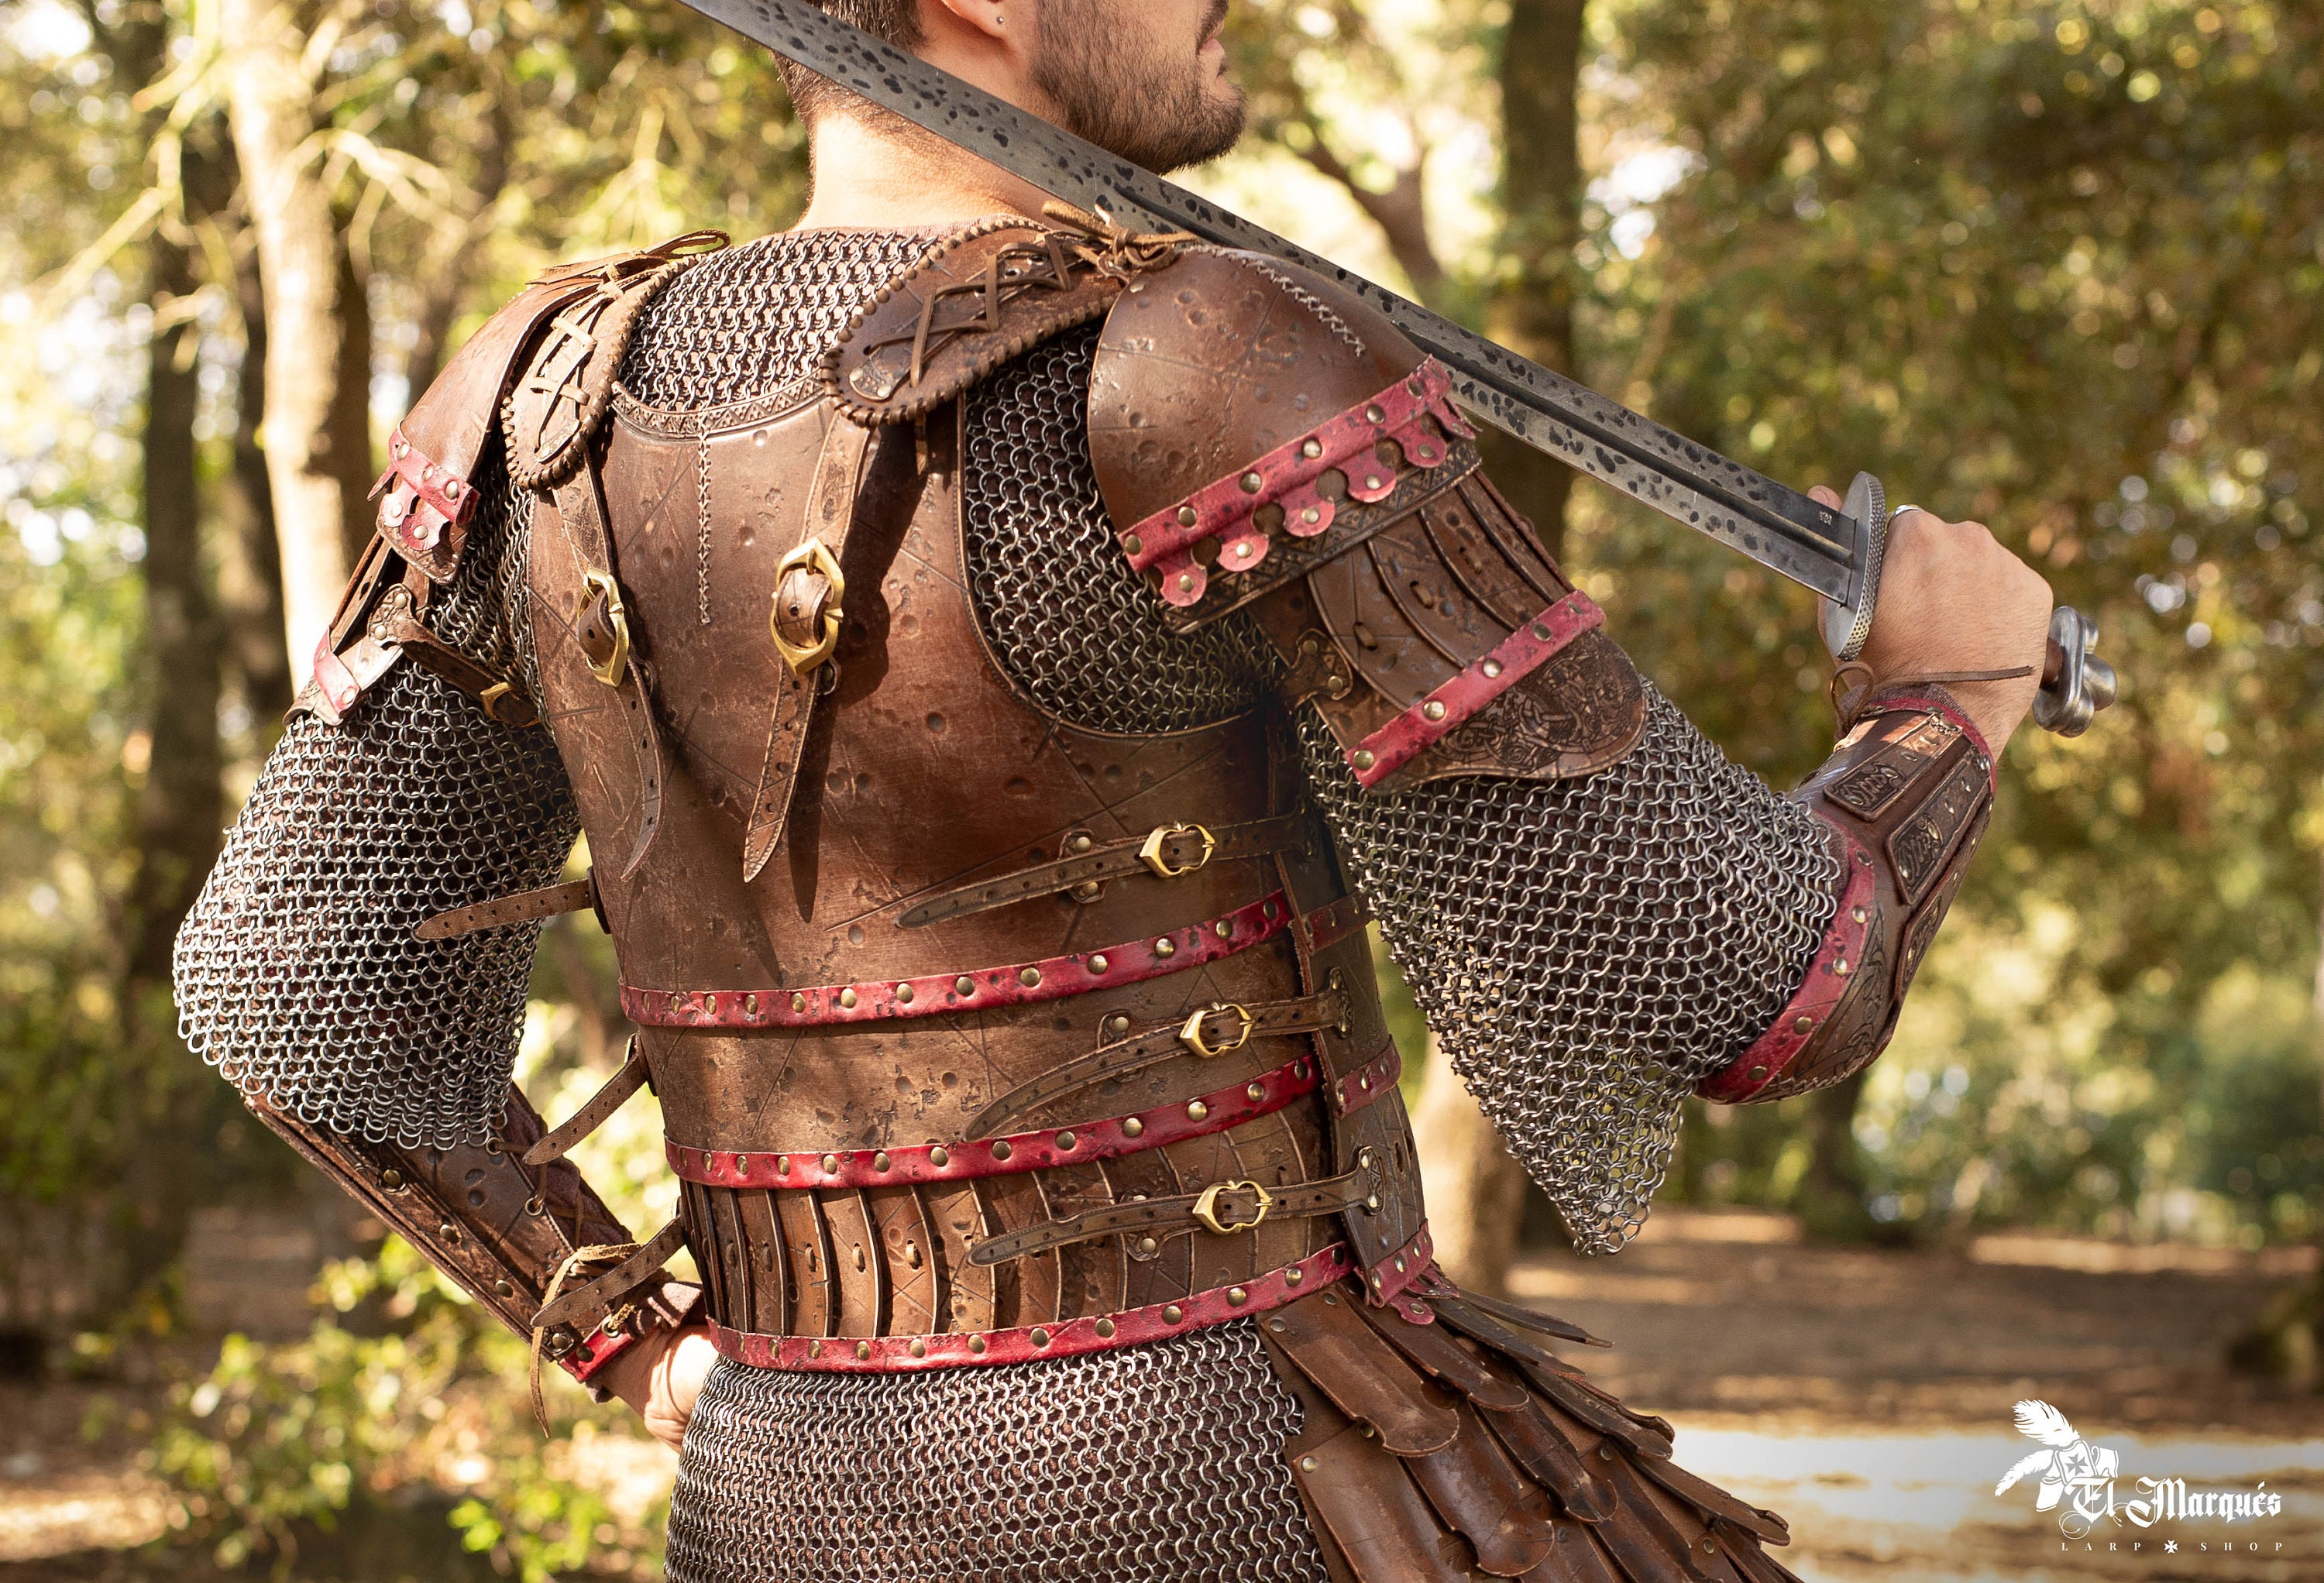 Armadura vikinga en el pecho y hombros, decoración para disfraz de pirata  vikingo, cosplay Negro Yuyangstore disfraz de cosplay